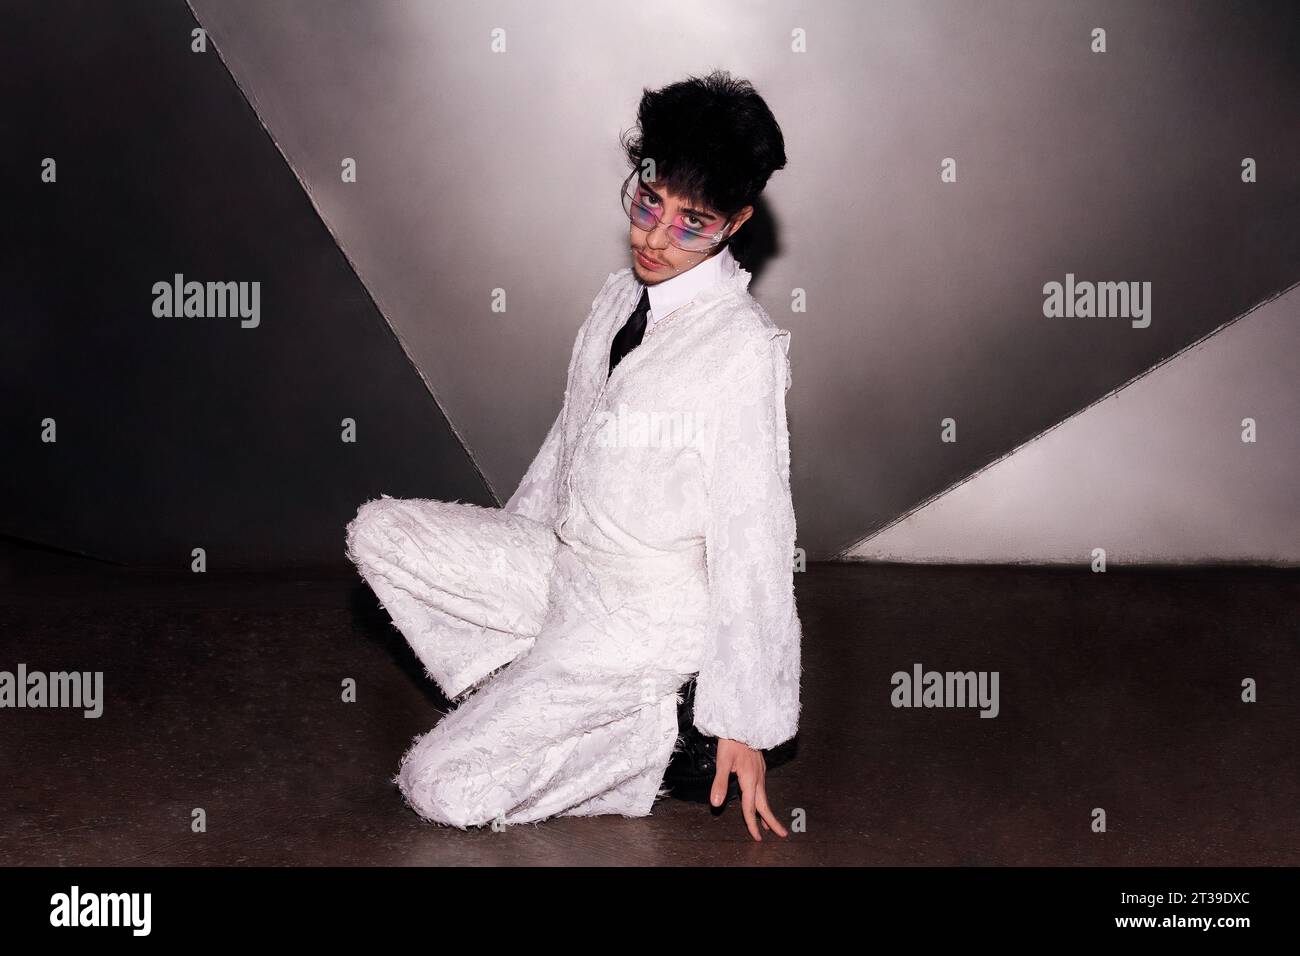 Persona alla moda con un trucco sorprendente, seduta su un pavimento di cemento con un'elegante tuta bianca, che offre uno sguardo forte verso l'agitazione della fotocamera Foto Stock